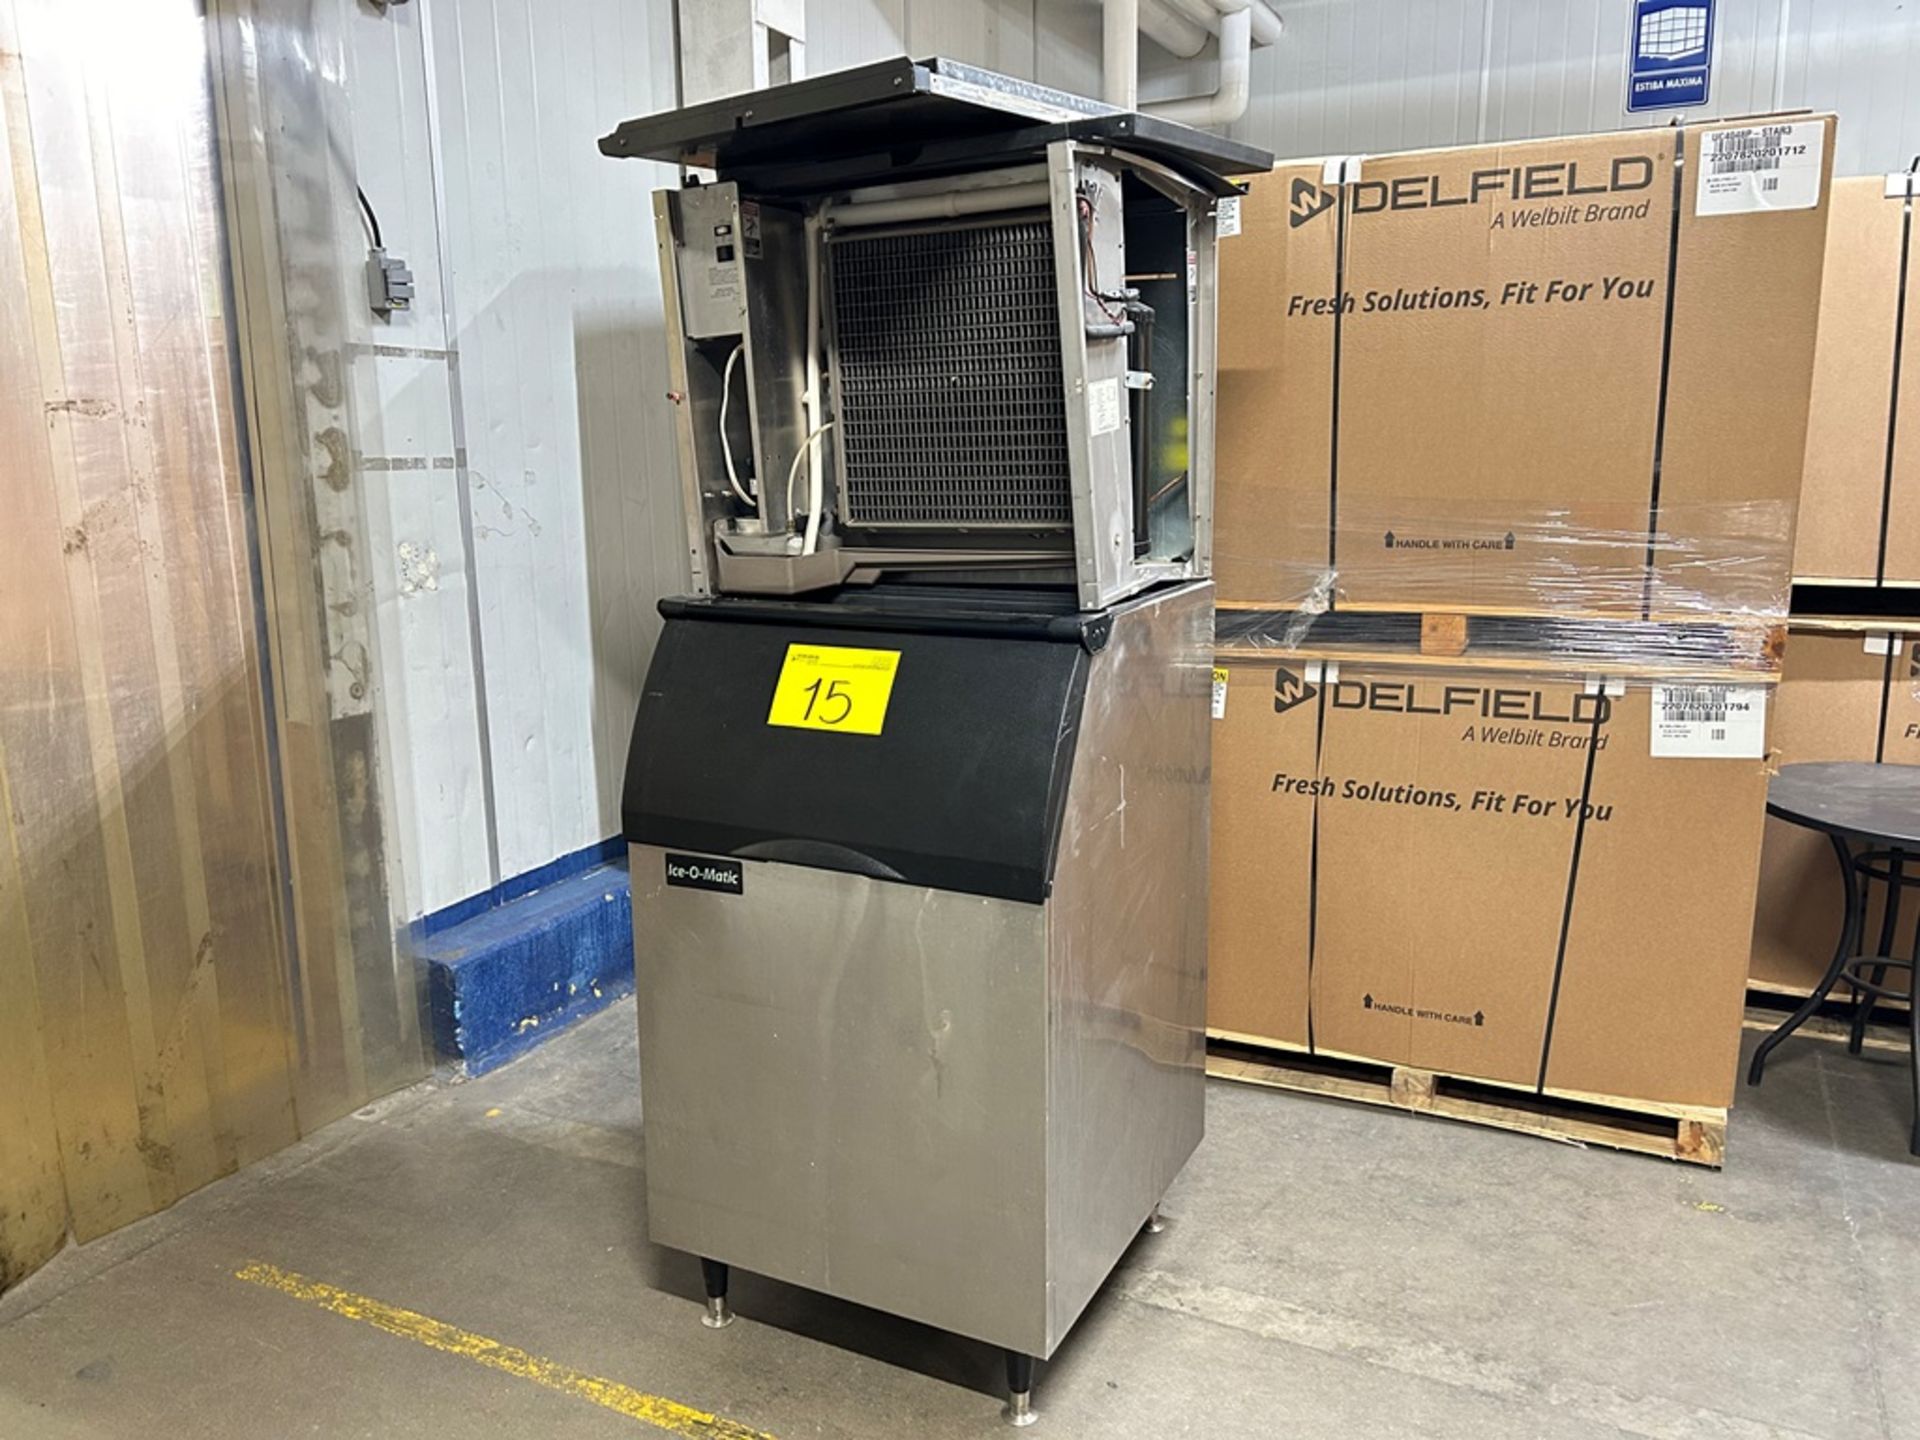 1 máquina de hielo con contenedor Marca ICE O MATIC, Modelo ICE1006HR4, Serie 10111280010035, Model - Bild 2 aus 6